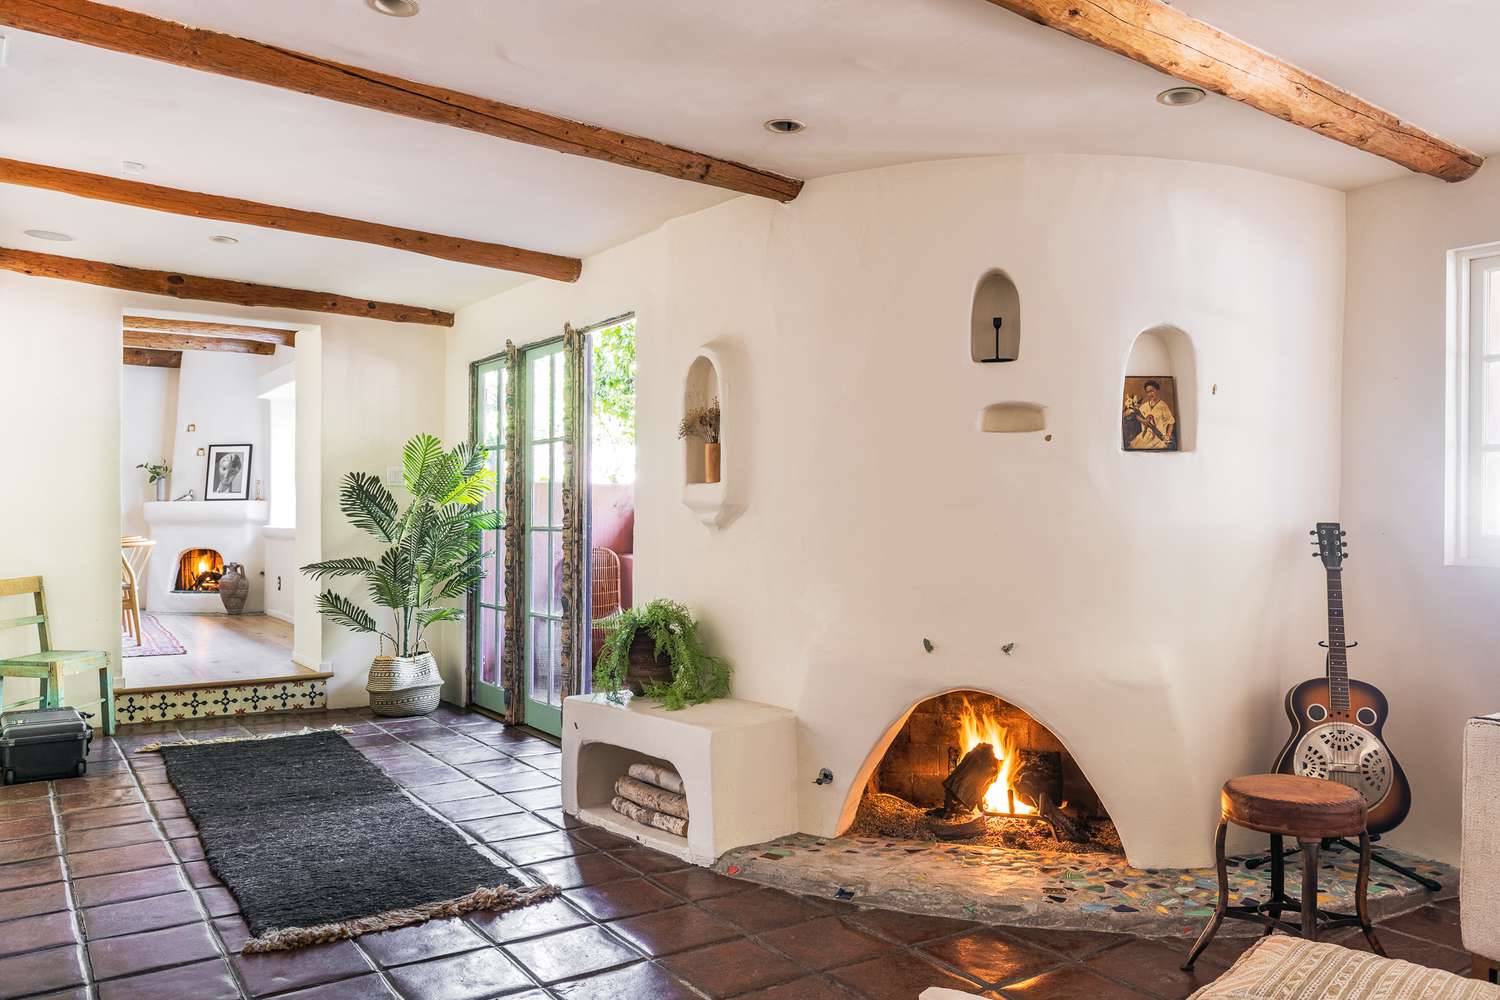 Salón de casa de estilo español con chimenea y vigas de madera en el techo